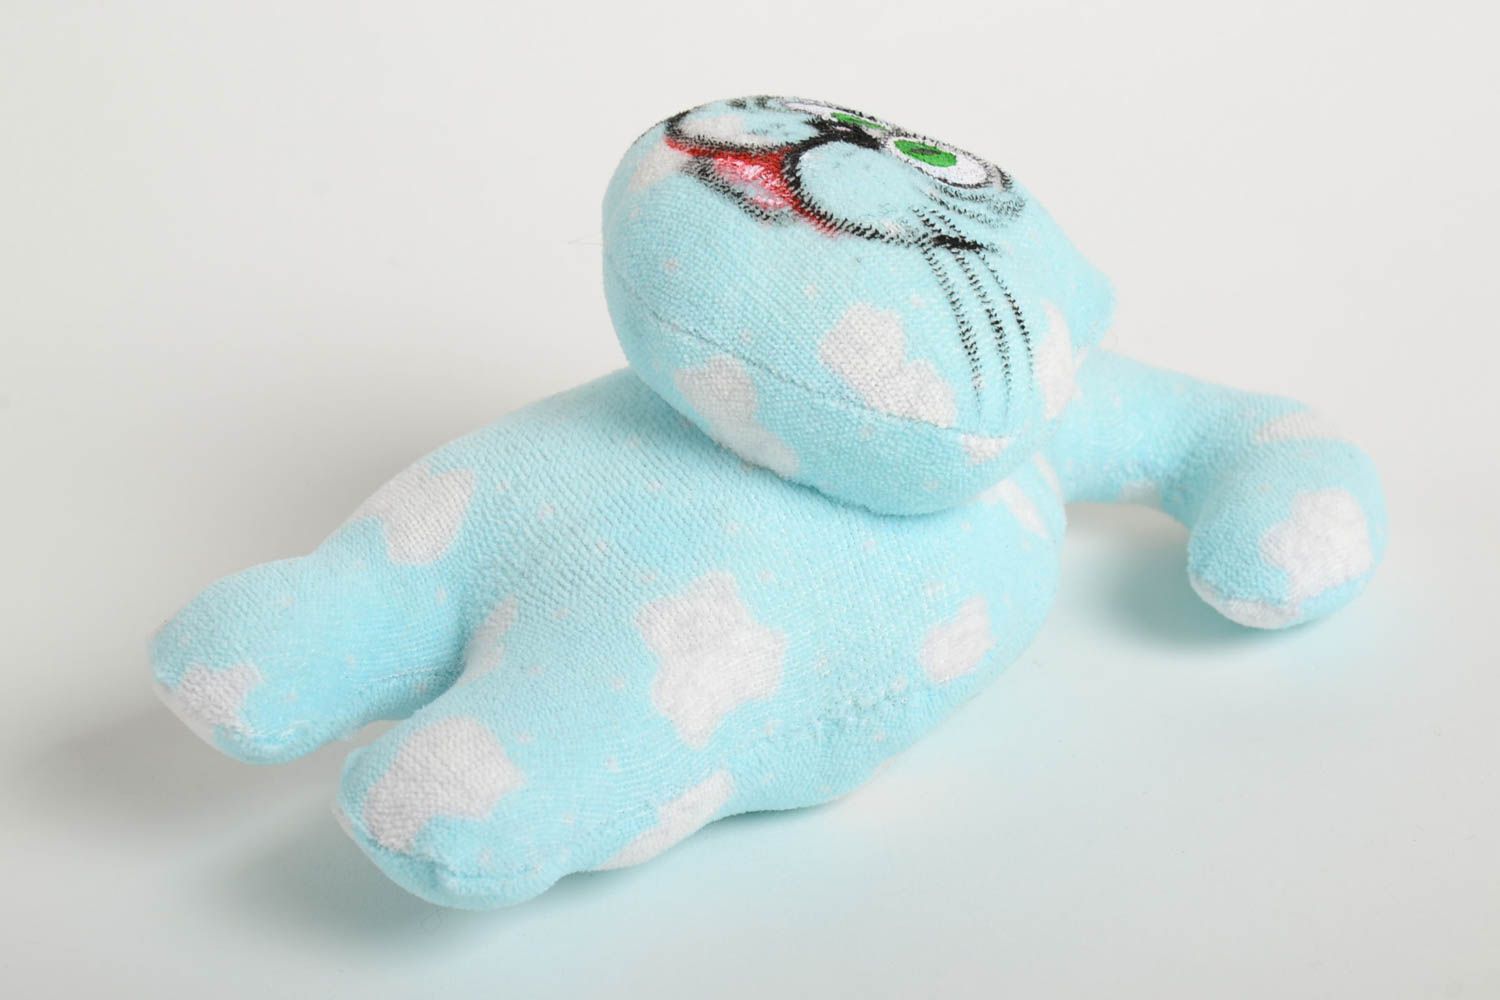 Мягкая игрушка ручной работы игрушка кот голубой забавный подарок на новоселье фото 3